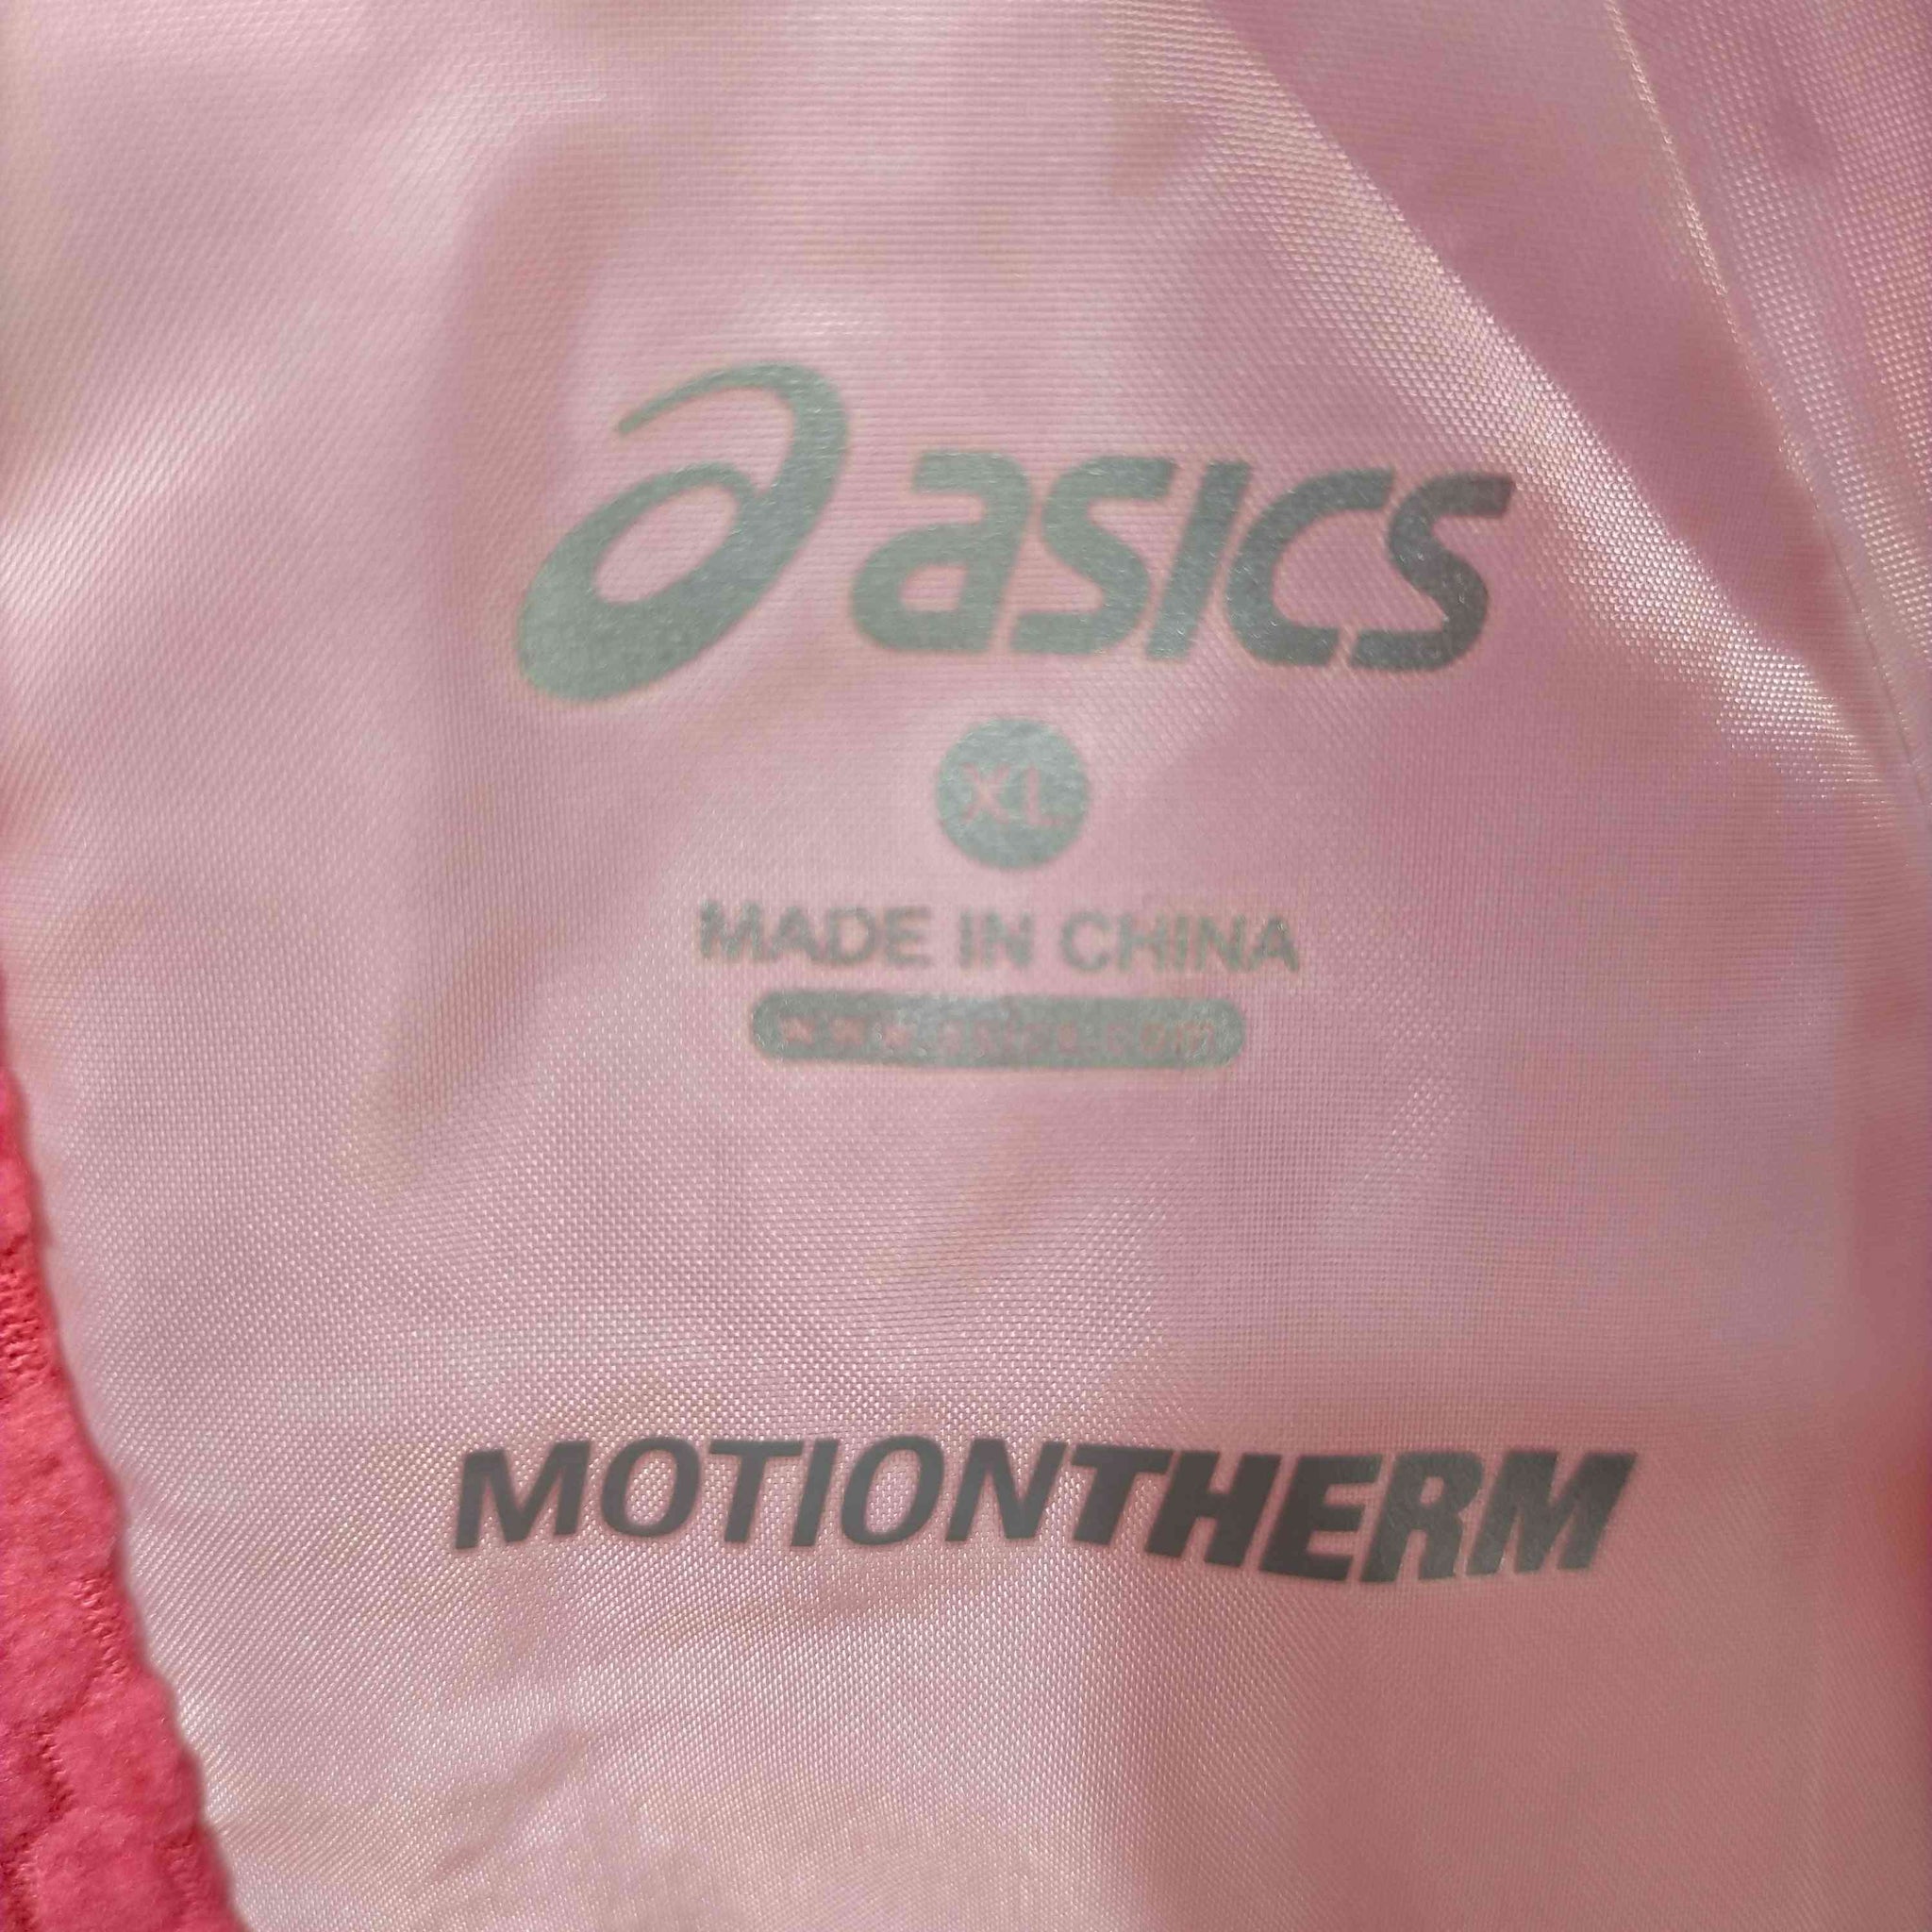 ASICS(アシックス)MOTIONTHERM トレーニング ウインドジャケット